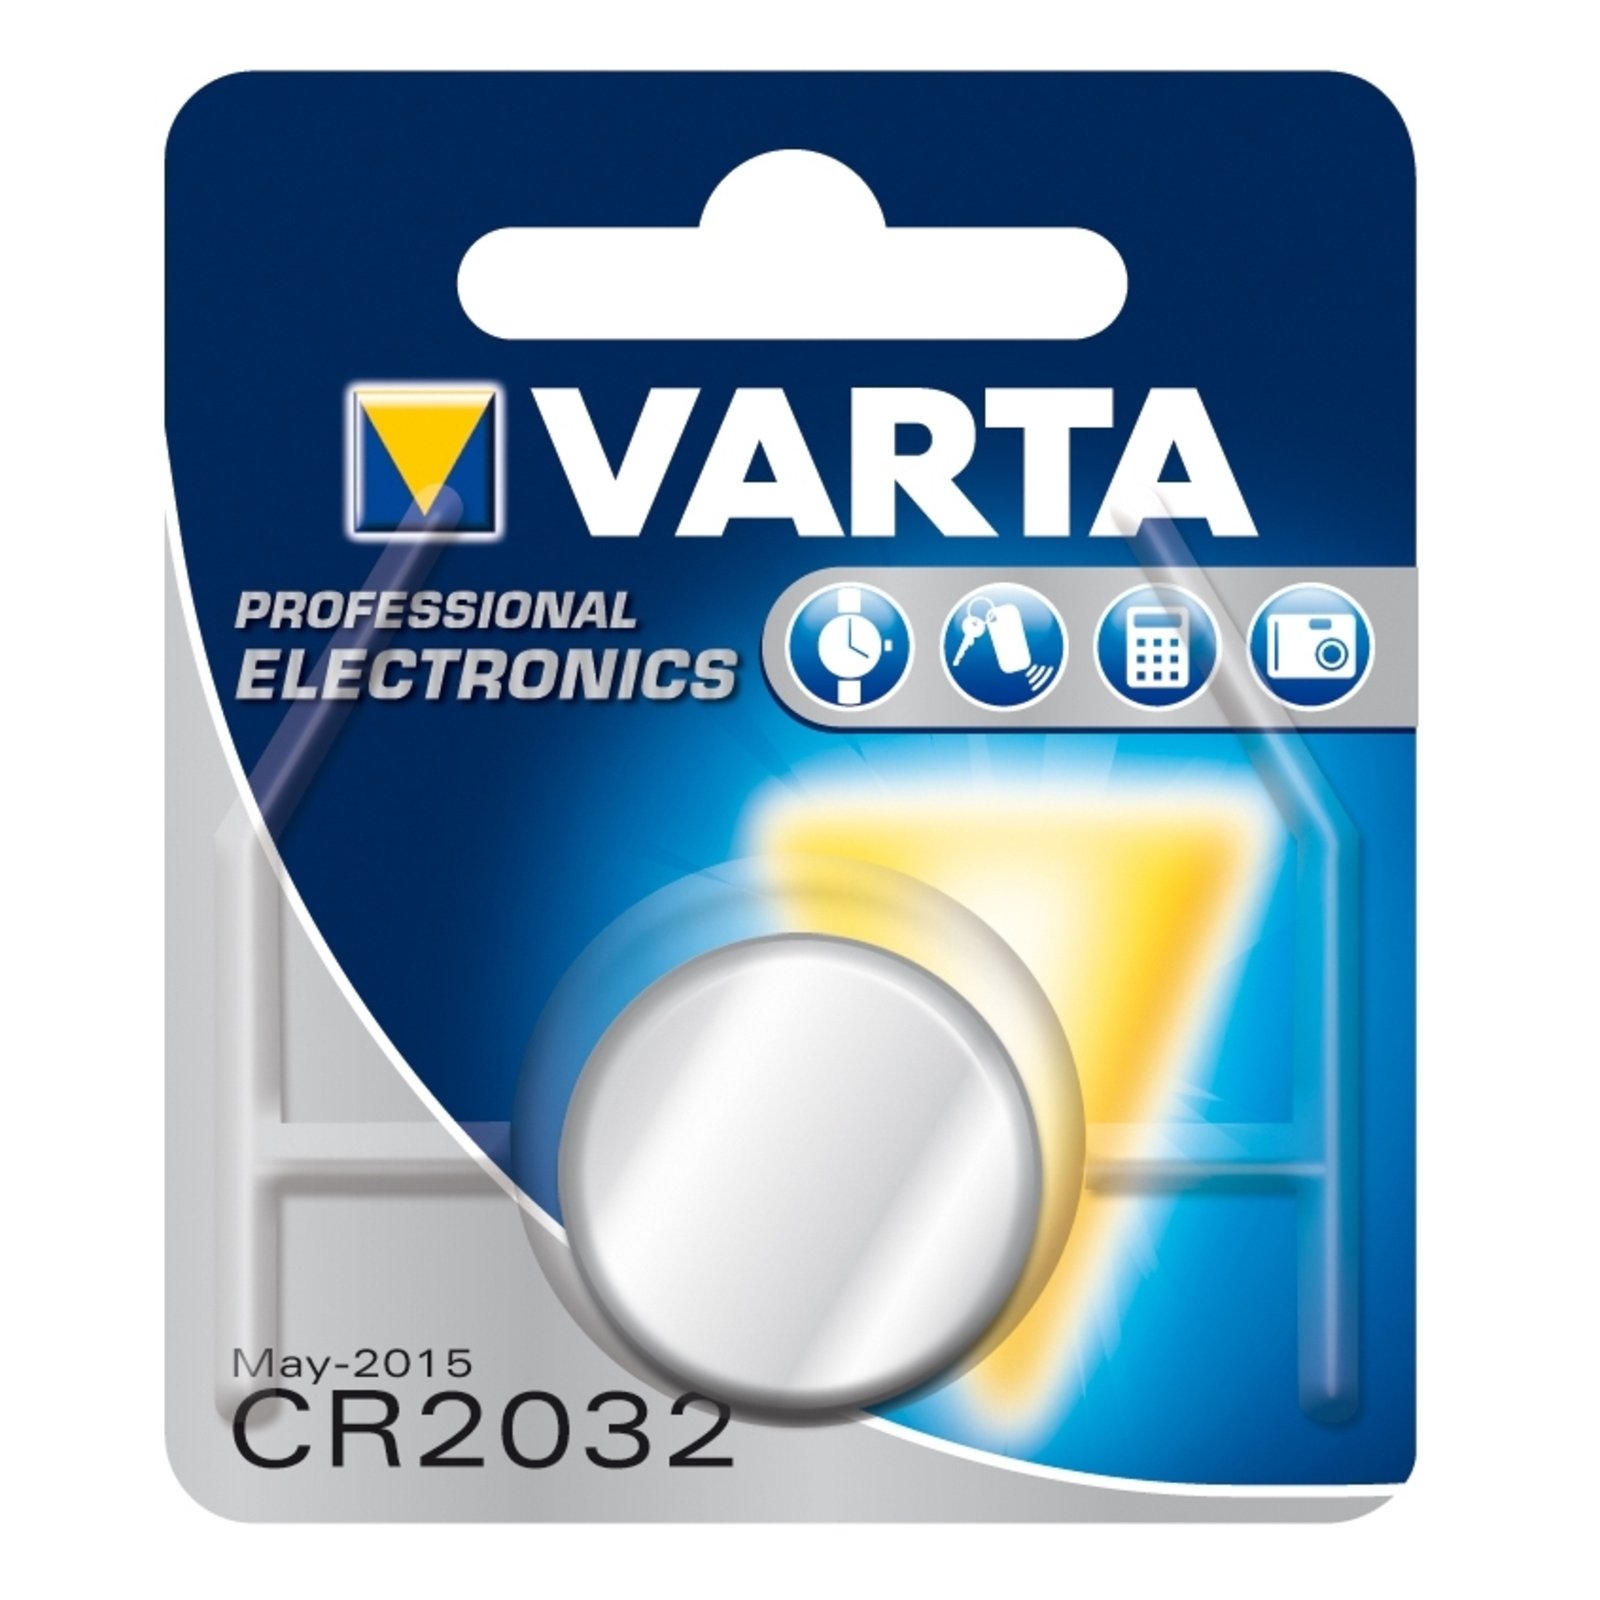 VARTA Lithium knappbatteri CR2032 3V 220 mAh